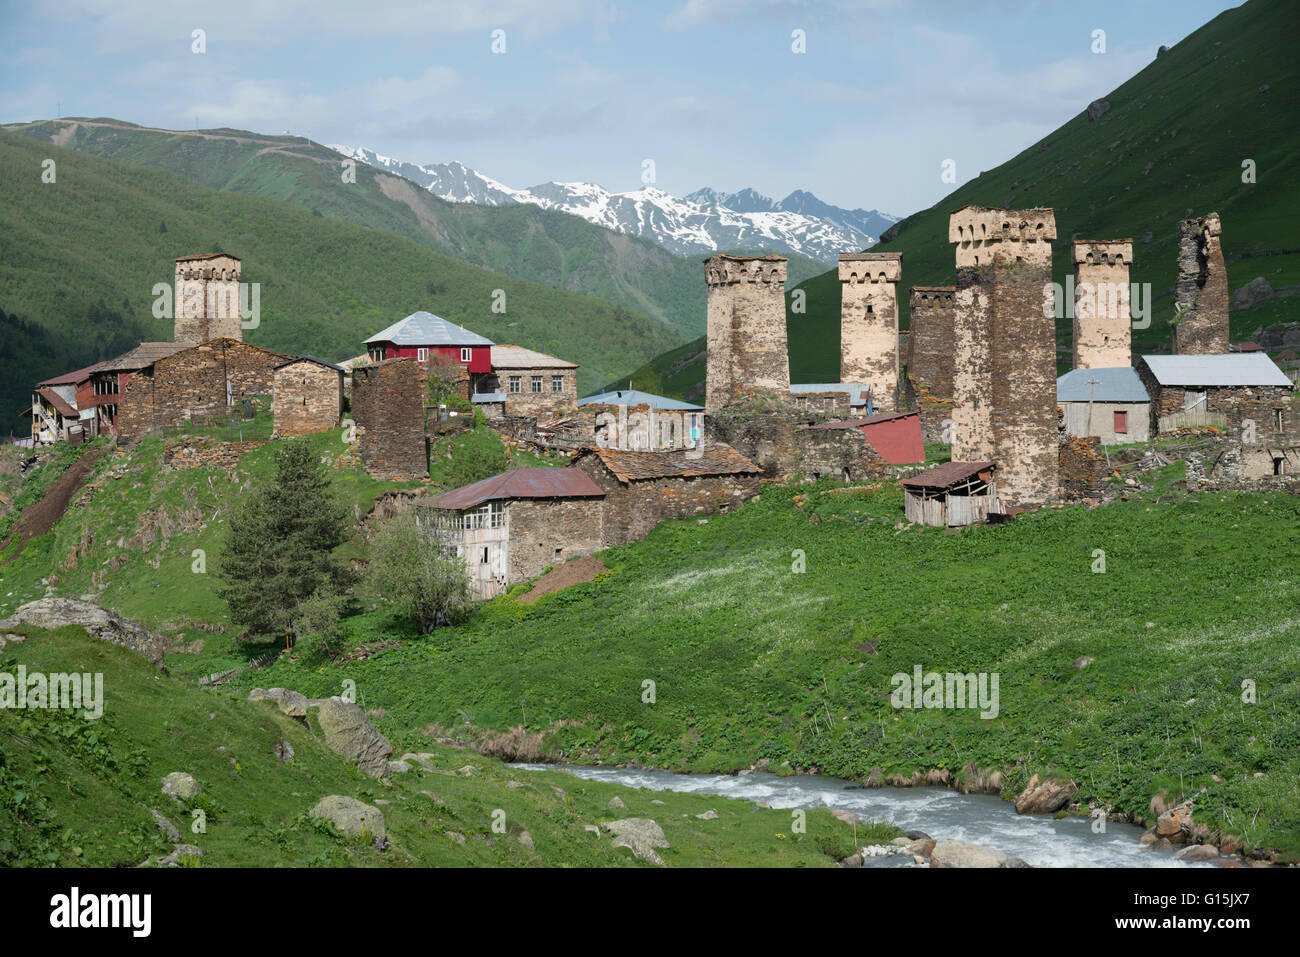 Ushguli villaggio, Svaneti regio, Georgia, Asia Centrale, Asia Foto Stock